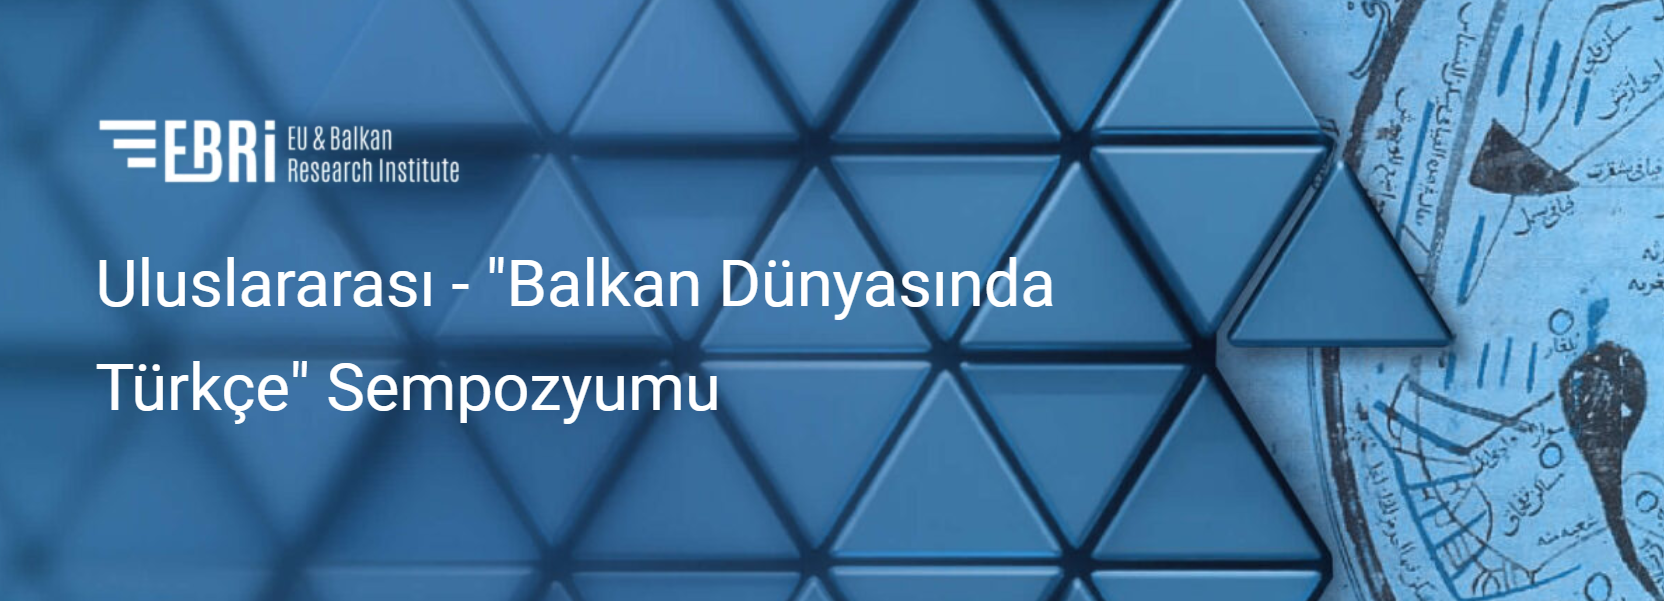 Uluslararası - "Balkan Dünyasında Türkçe" Sempozyumu